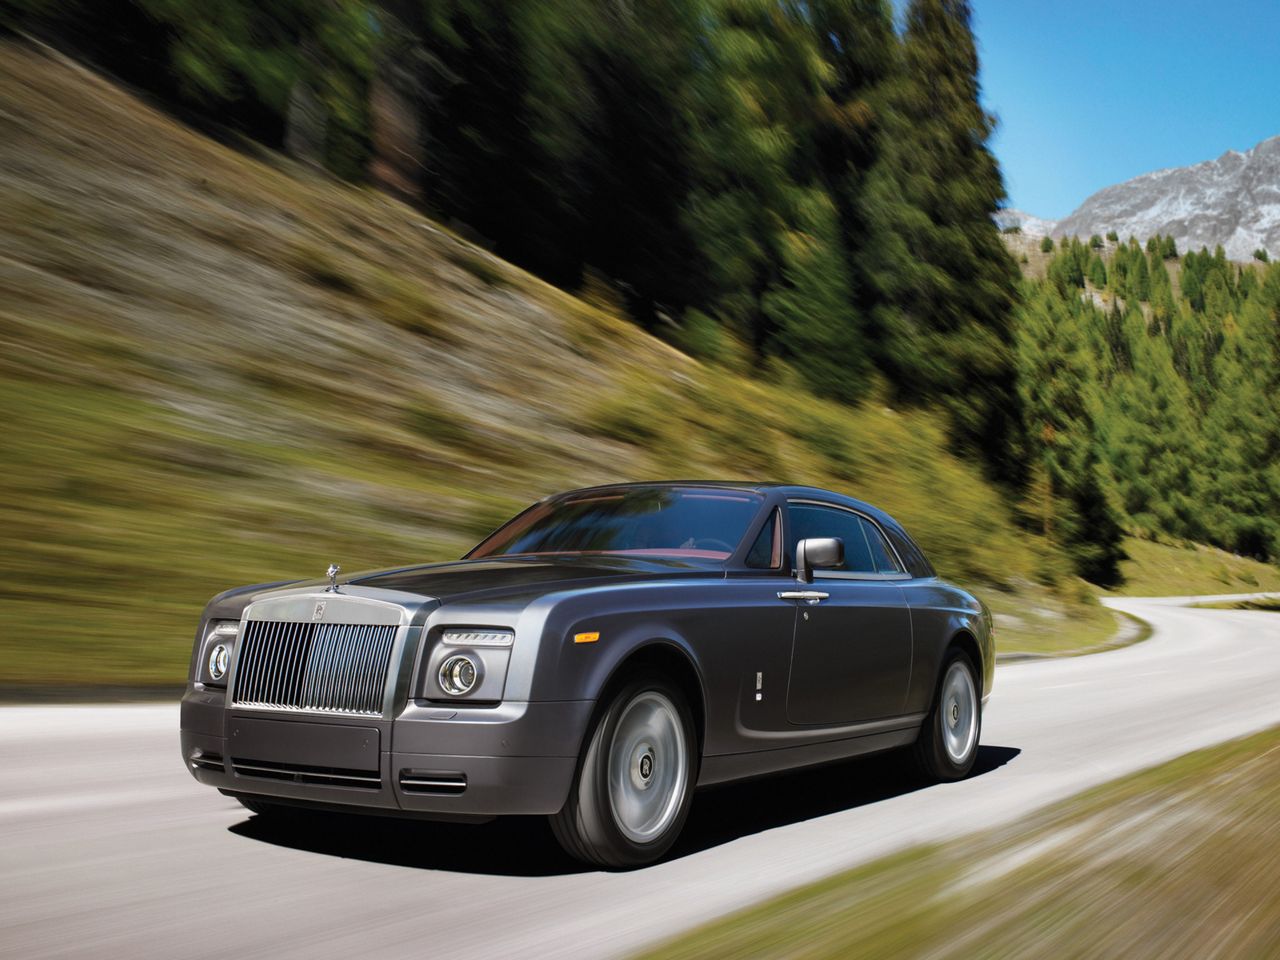 Rolls-Royce Phantom miał mieć zupełnie inny silnik. Potężną jednostkę, jak w żadnym innym aucie